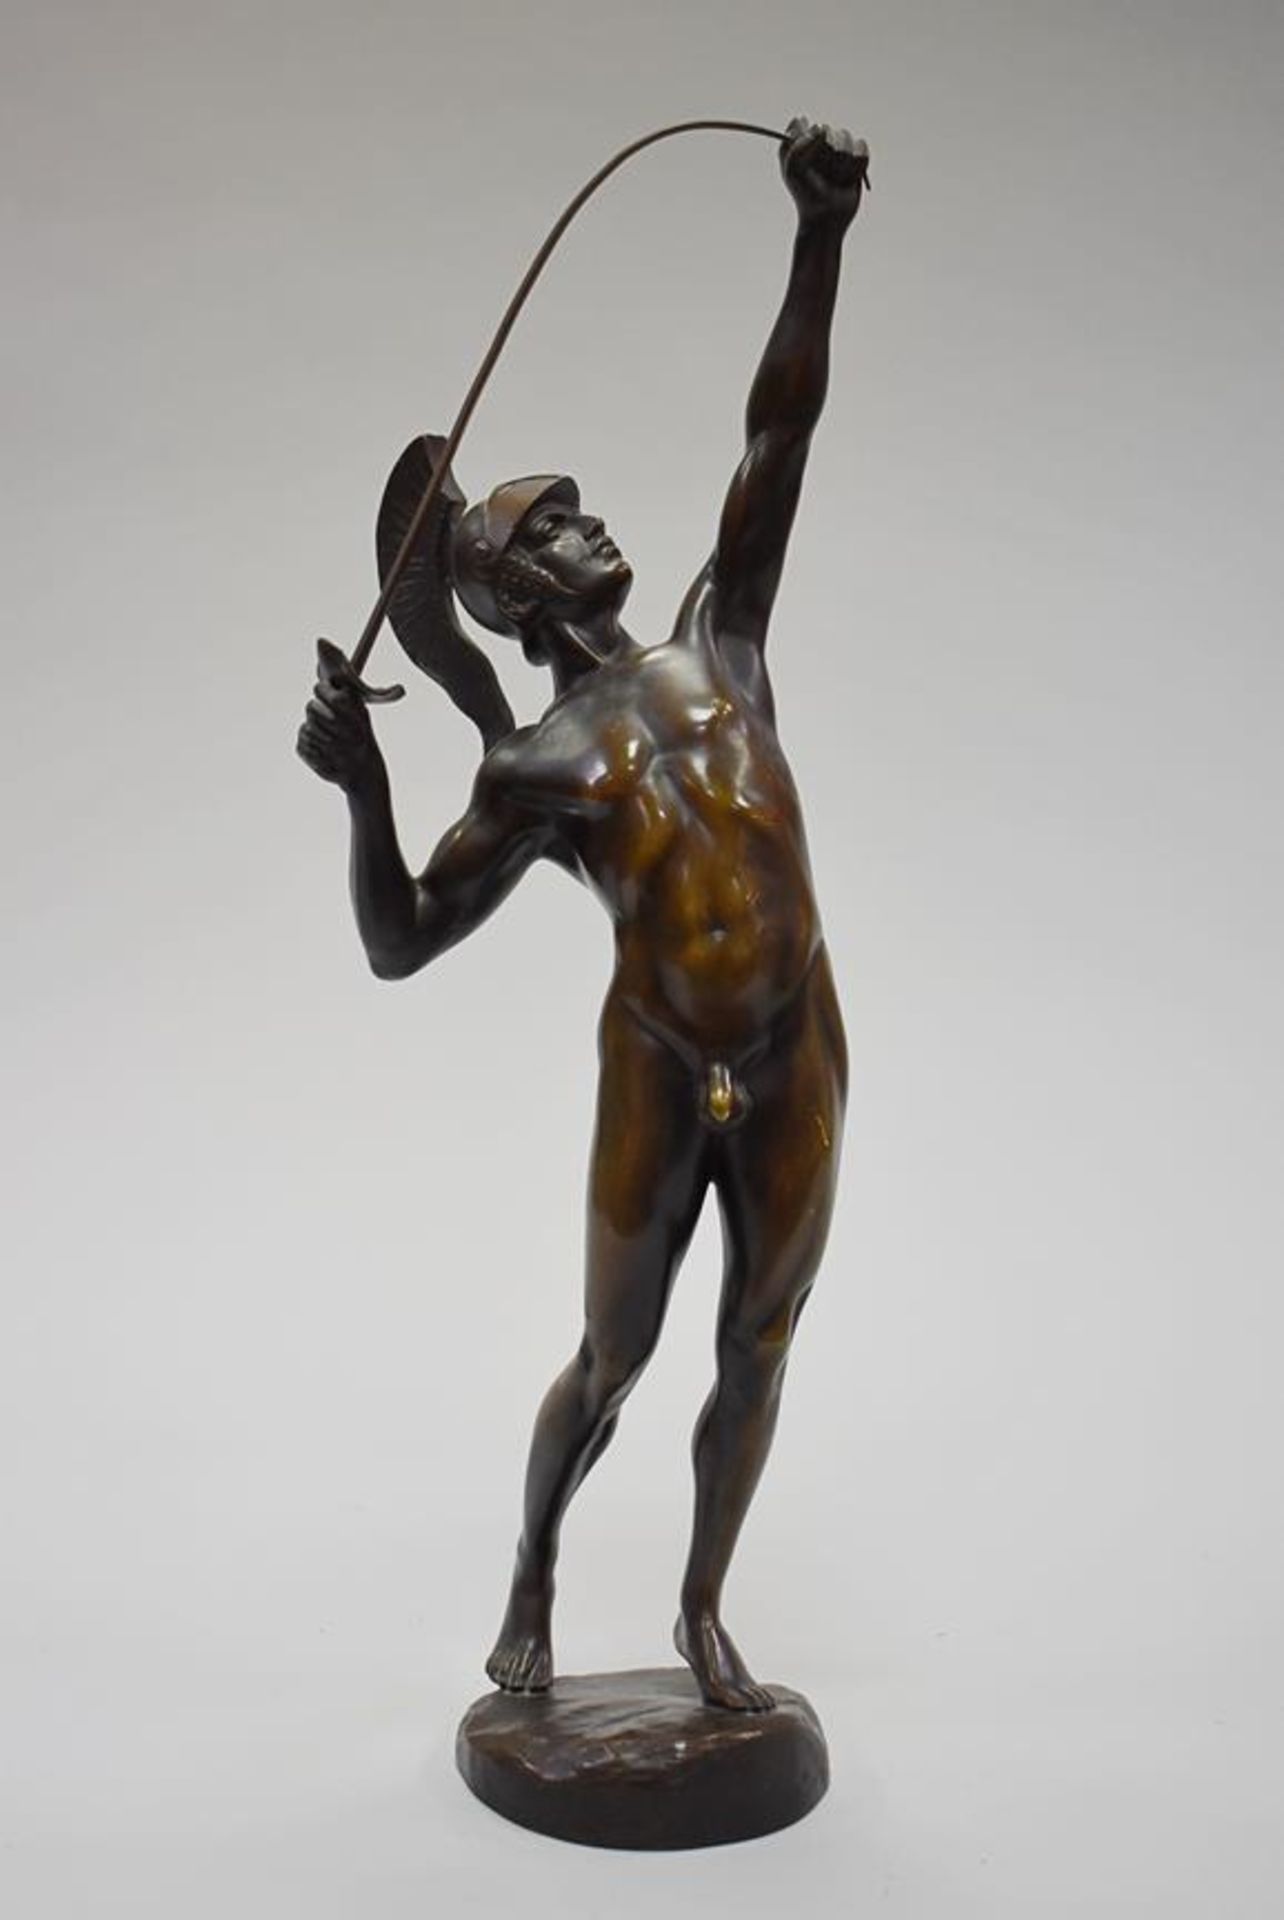 Richard W. Lange (1879-1944) zugeschrieben "Ares" Bronzefigur des griechischen Kriegsgottes Ares,